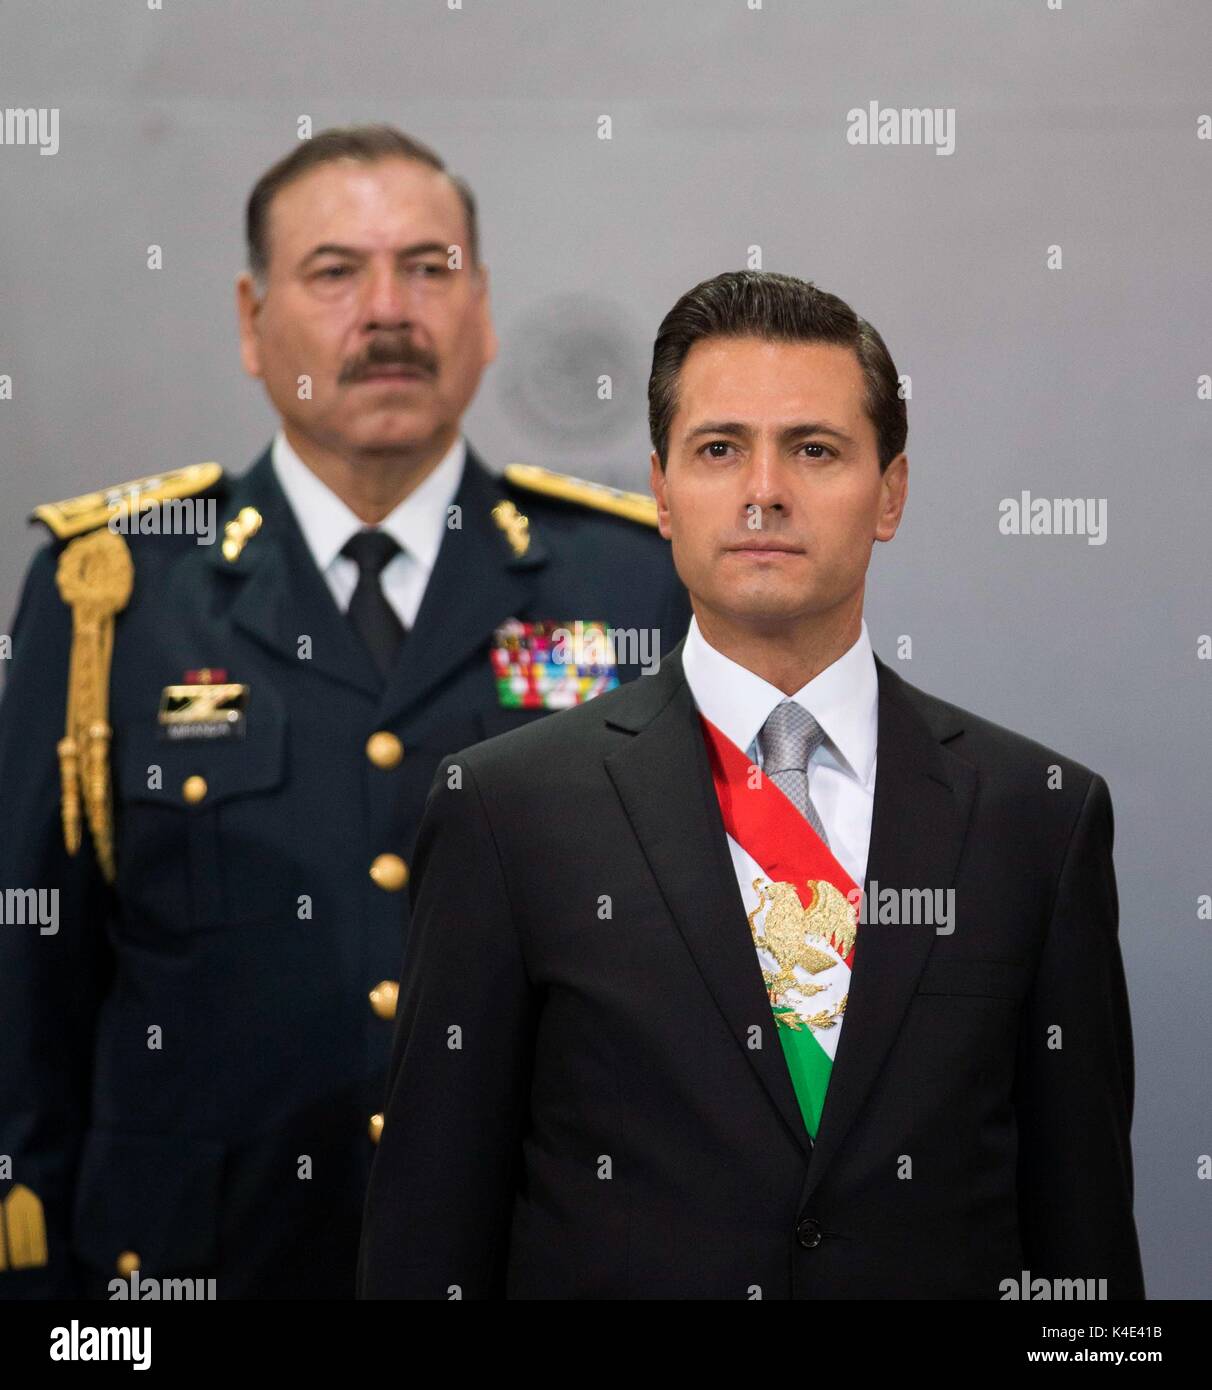 Le Président mexicain Enrique Pena Nieto livre son état de l'union au Palais national le 2 septembre 2017 à Mexico, Mexique. Peña Nieto a dit qu'il ne sera pas accepter une proposition qui va à l'encontre de la dignité nationale dans ses négociations avec les États-Unis. Banque D'Images